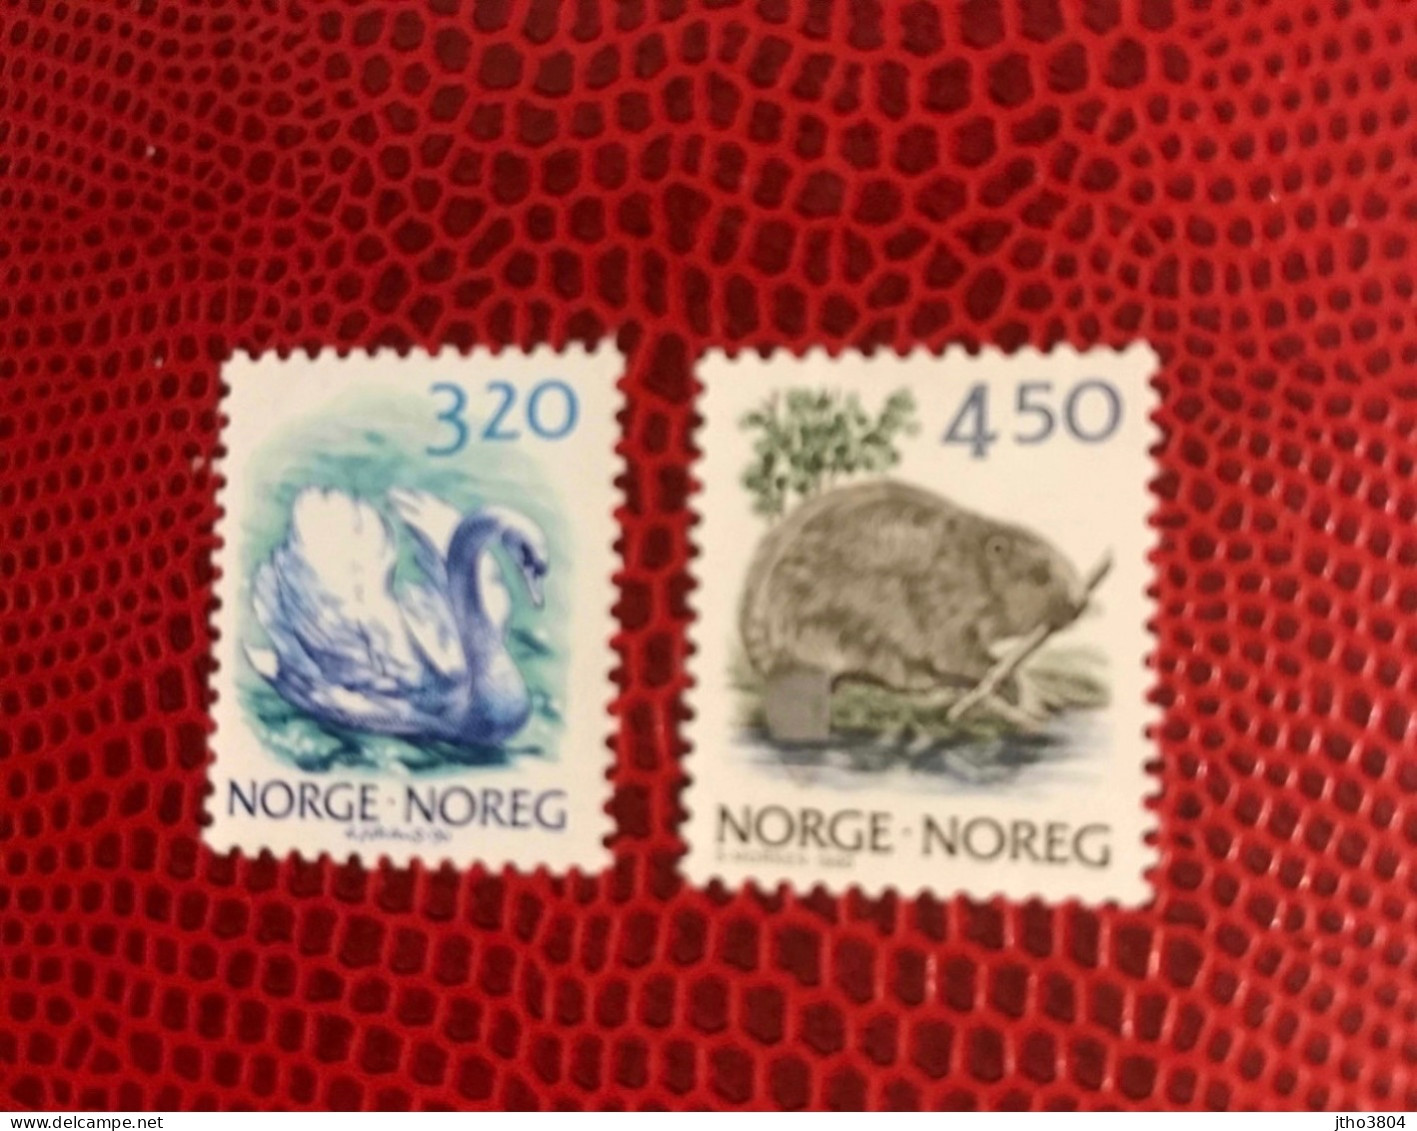 NORVÈGE NORWEGEN 1990 2v Neuf MNH ** YT 997 998 Pájaro Bird Pássaro Vogel Ucello Oiseau NORWAY NORGE NOREK - Zwanen